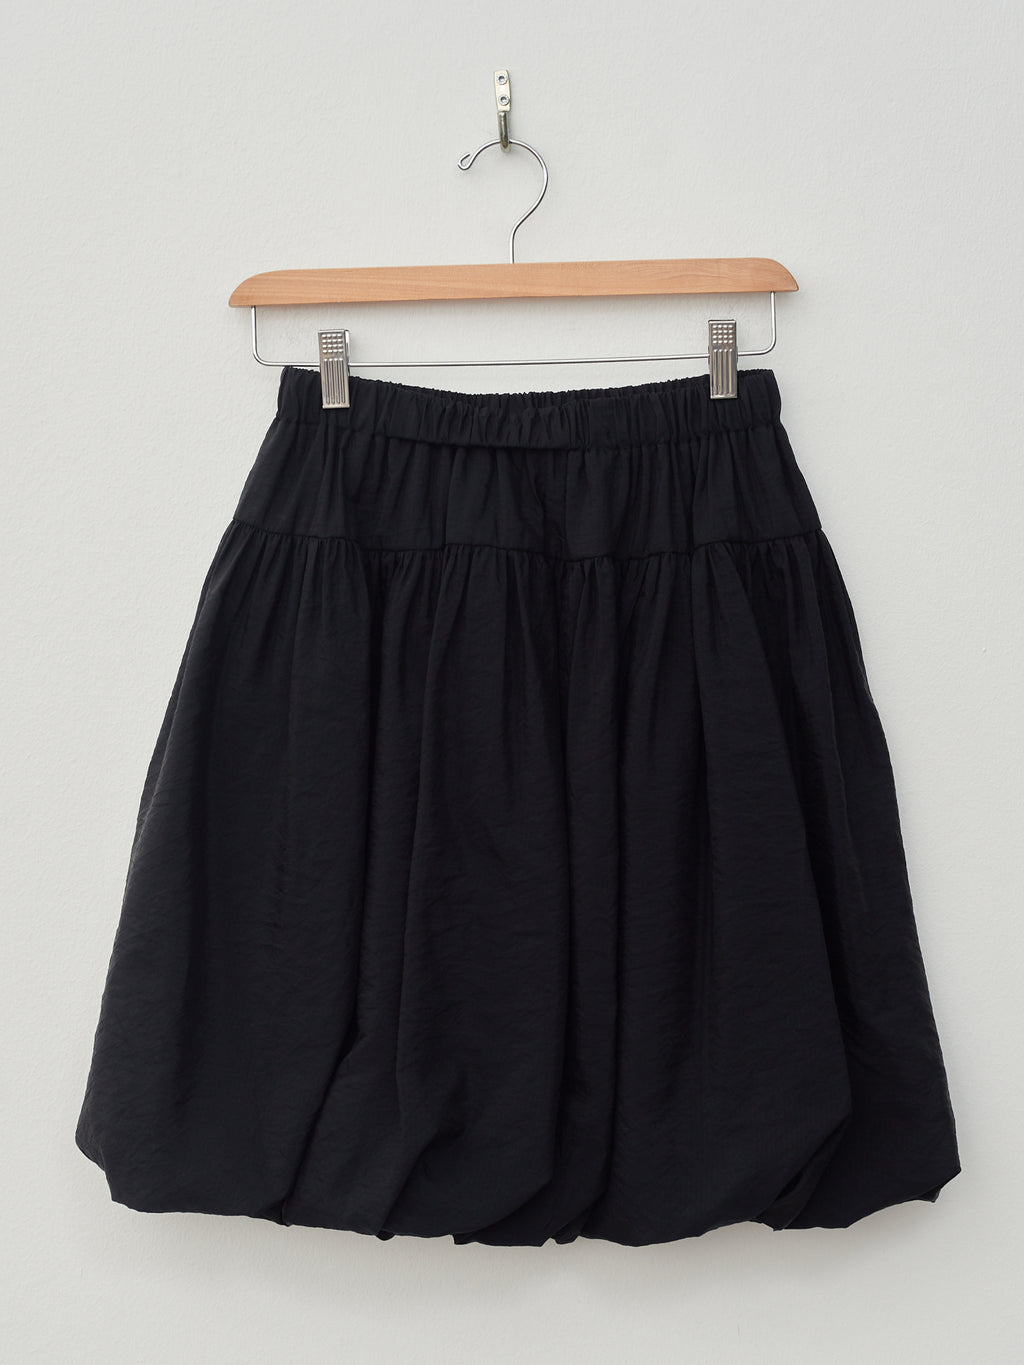 Namu Shop - Sara Lanzi Ripstop Balloon Skirt - Black